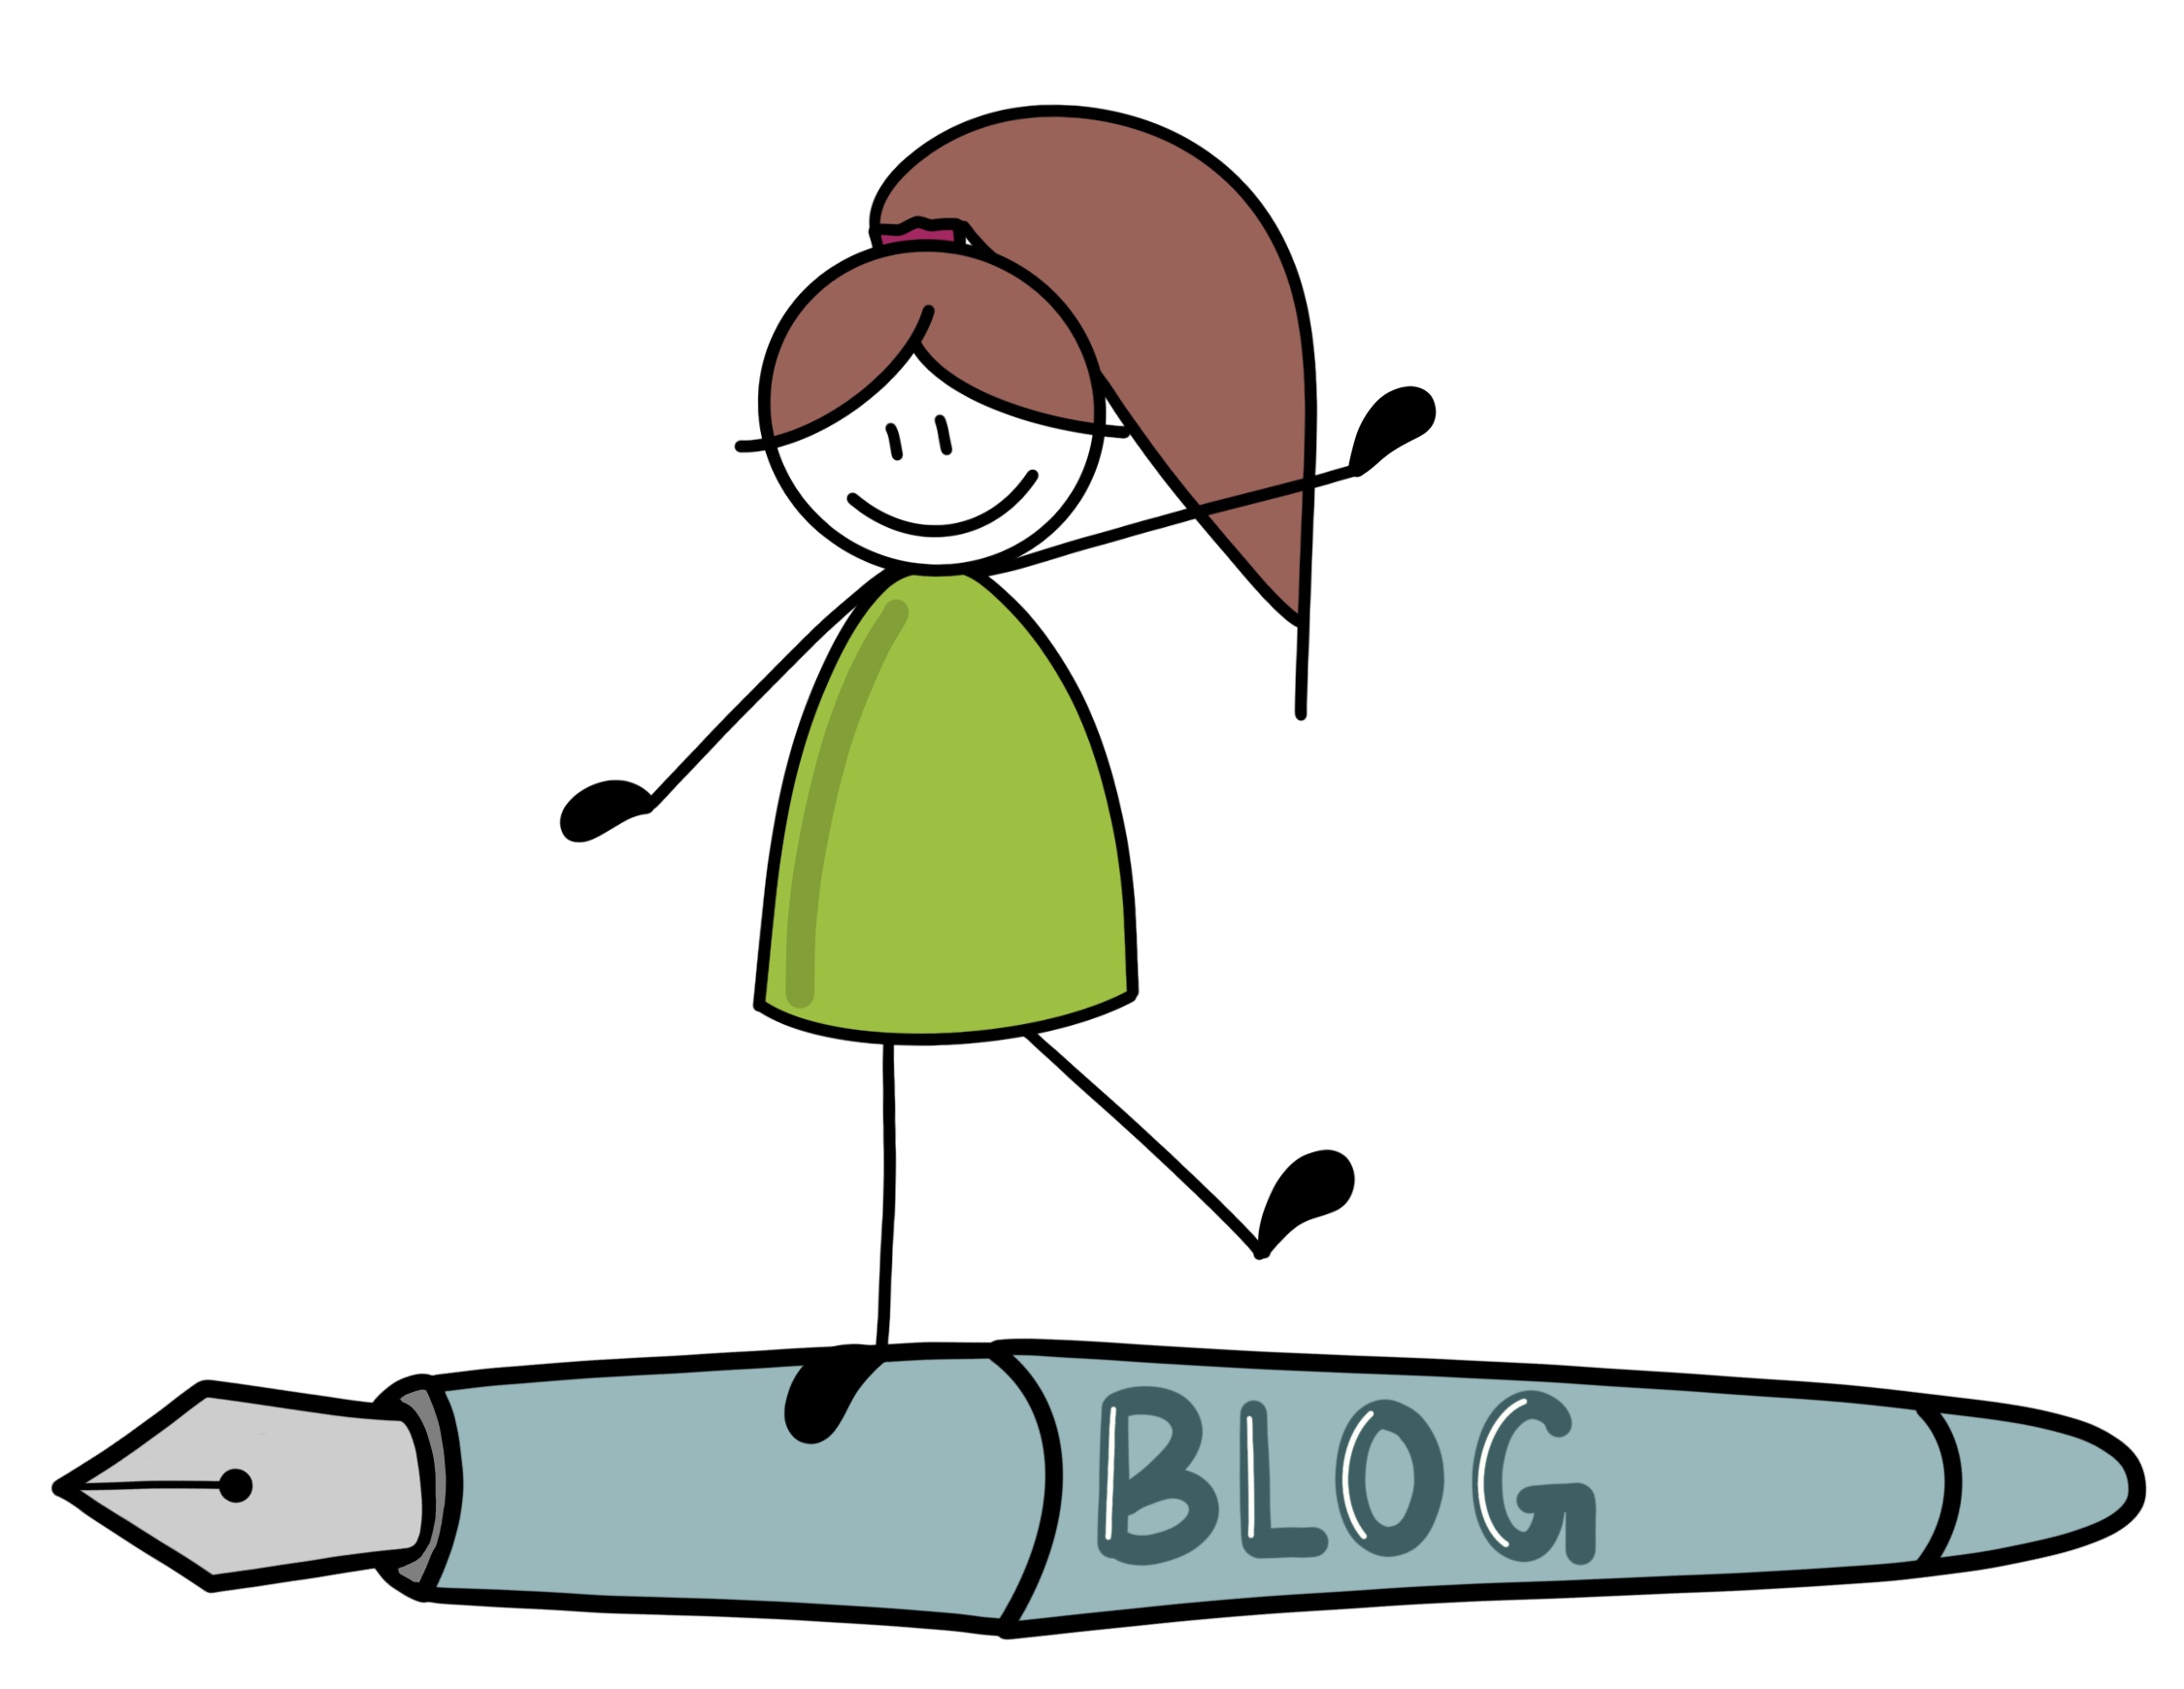 Blogbeitrag schreiben lassen